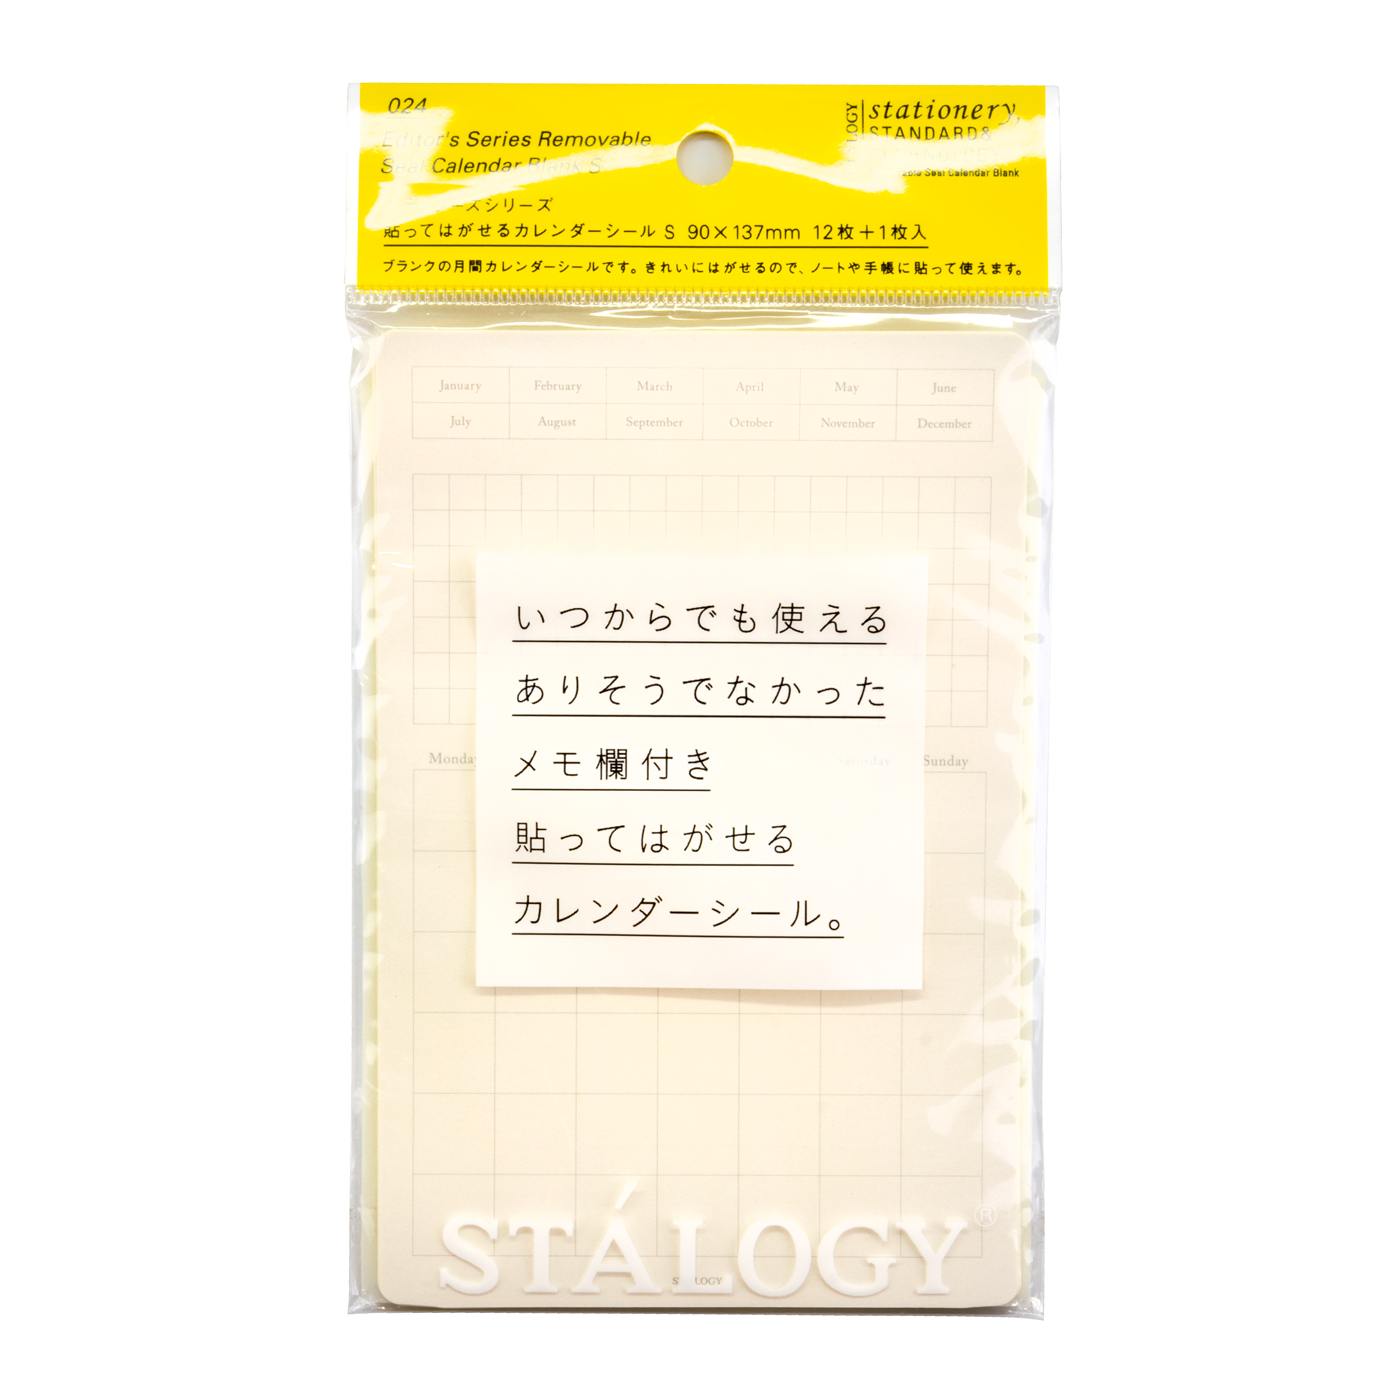 Stalogy Removable Dateless Calendar Sticky Notes - 90mm x 137mm